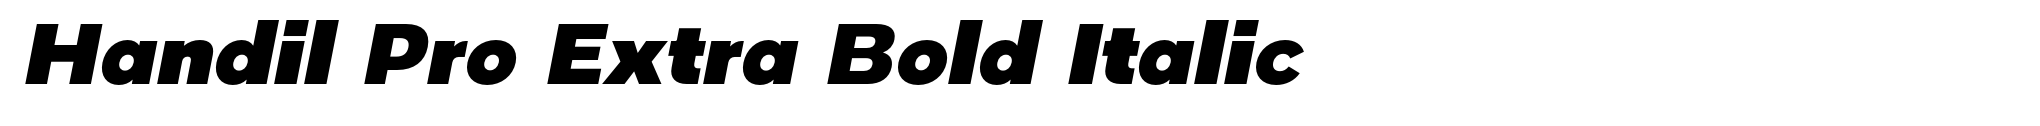 Handil Pro Extra Bold Italic image